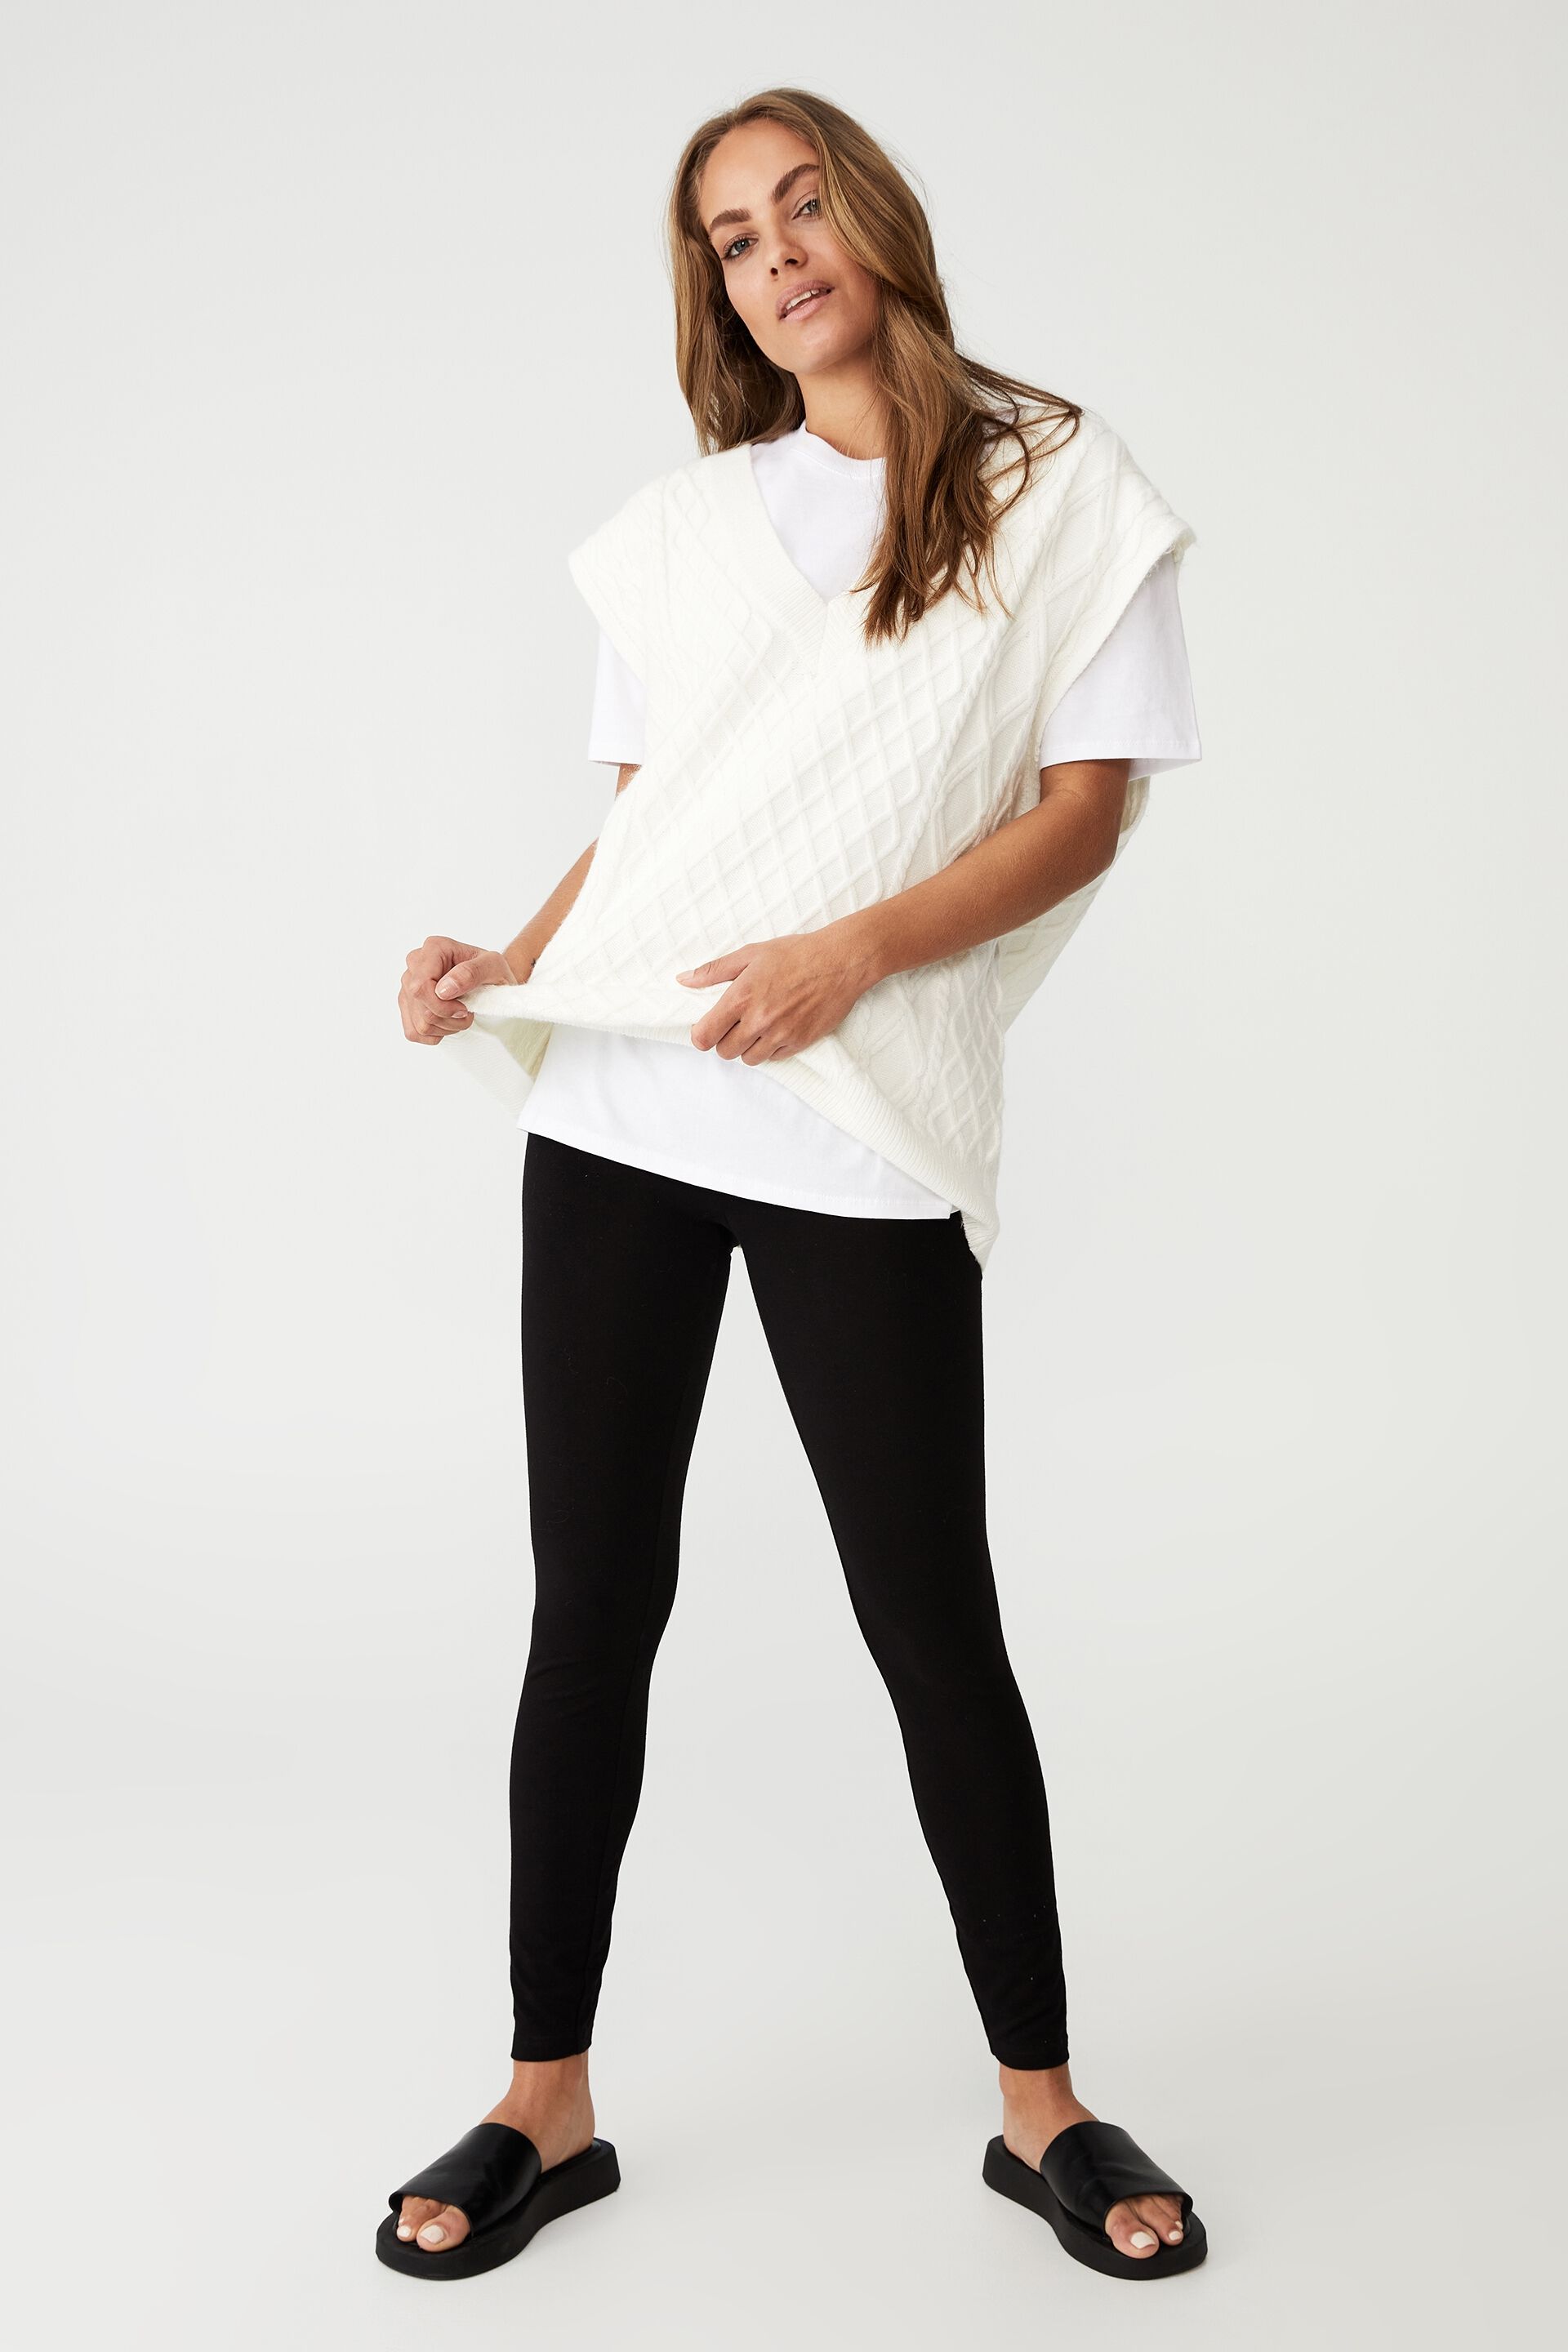 Tani Full length Leggings |Tani Clothing Australia|Tani Online - Urban  Cachet